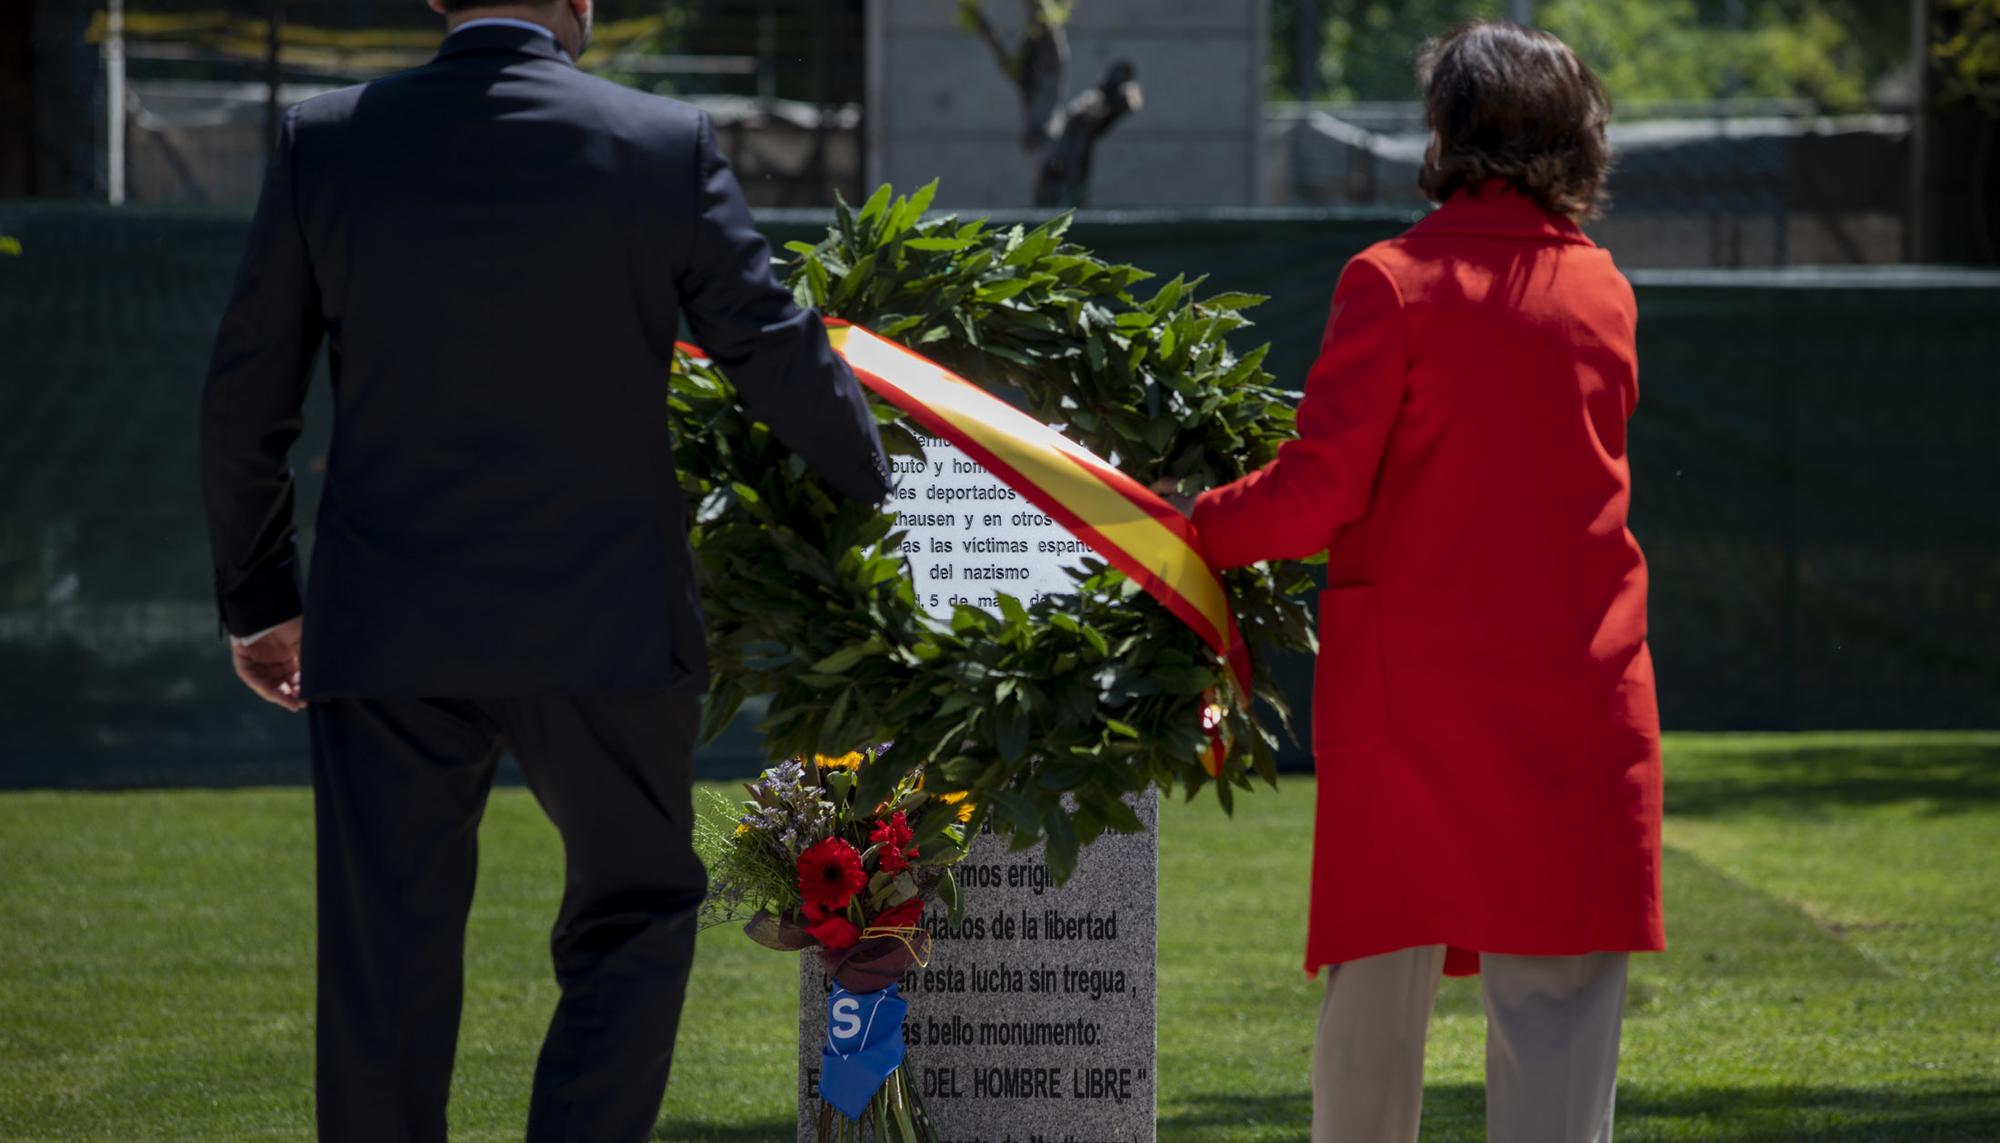  Acto en homenaje y recuerdo de las víctimas españolas del nazismo - 4